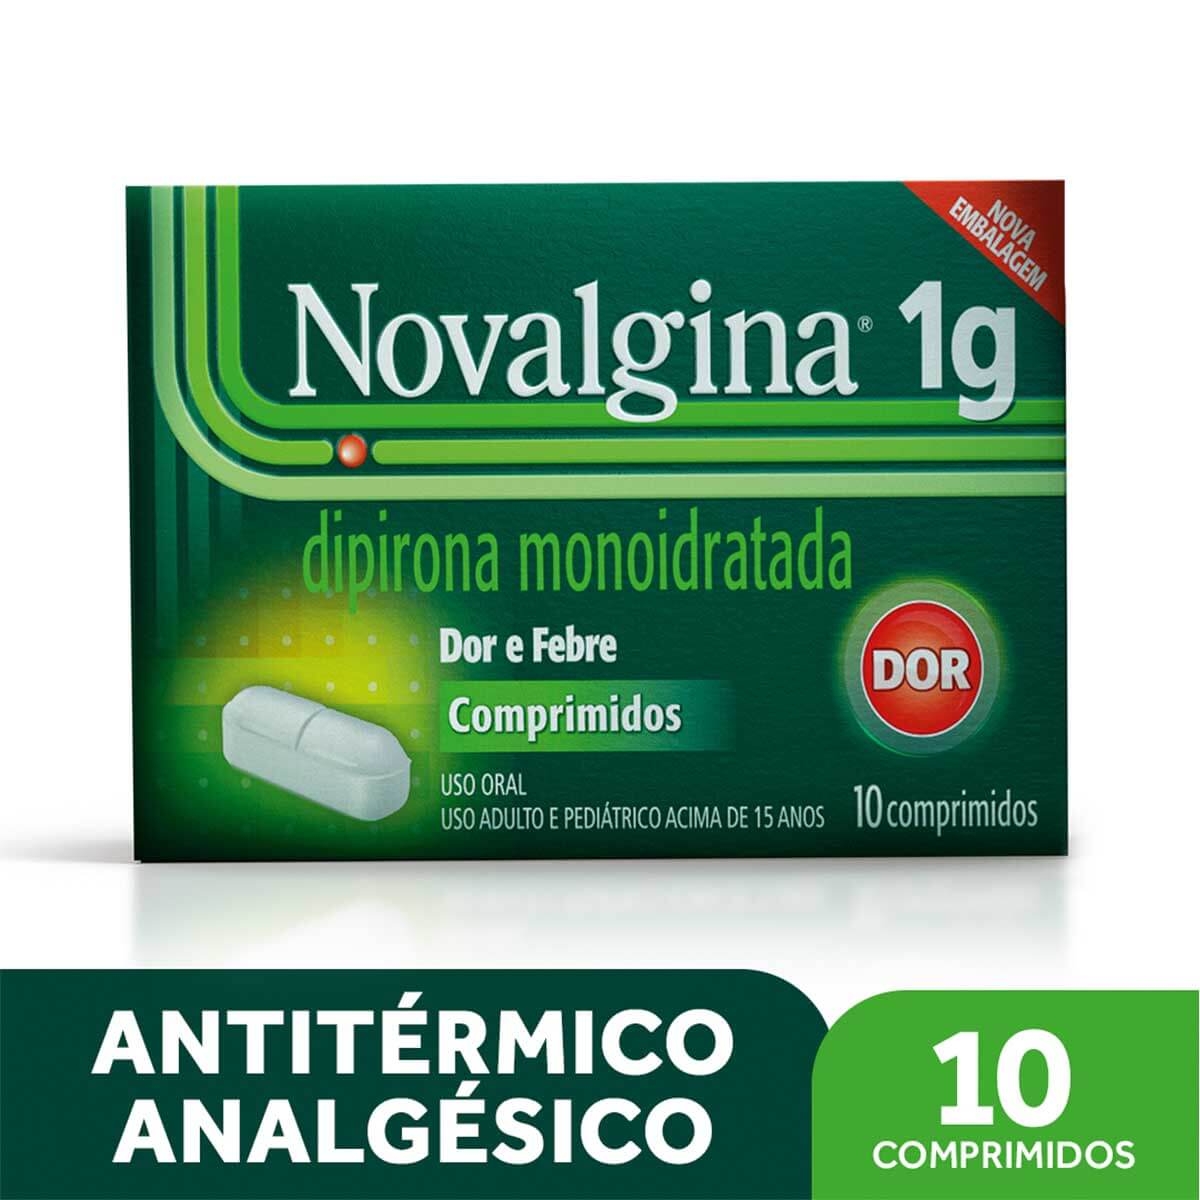 Novalgina 1g Analgésico e Antitérmico 10 comprimidos